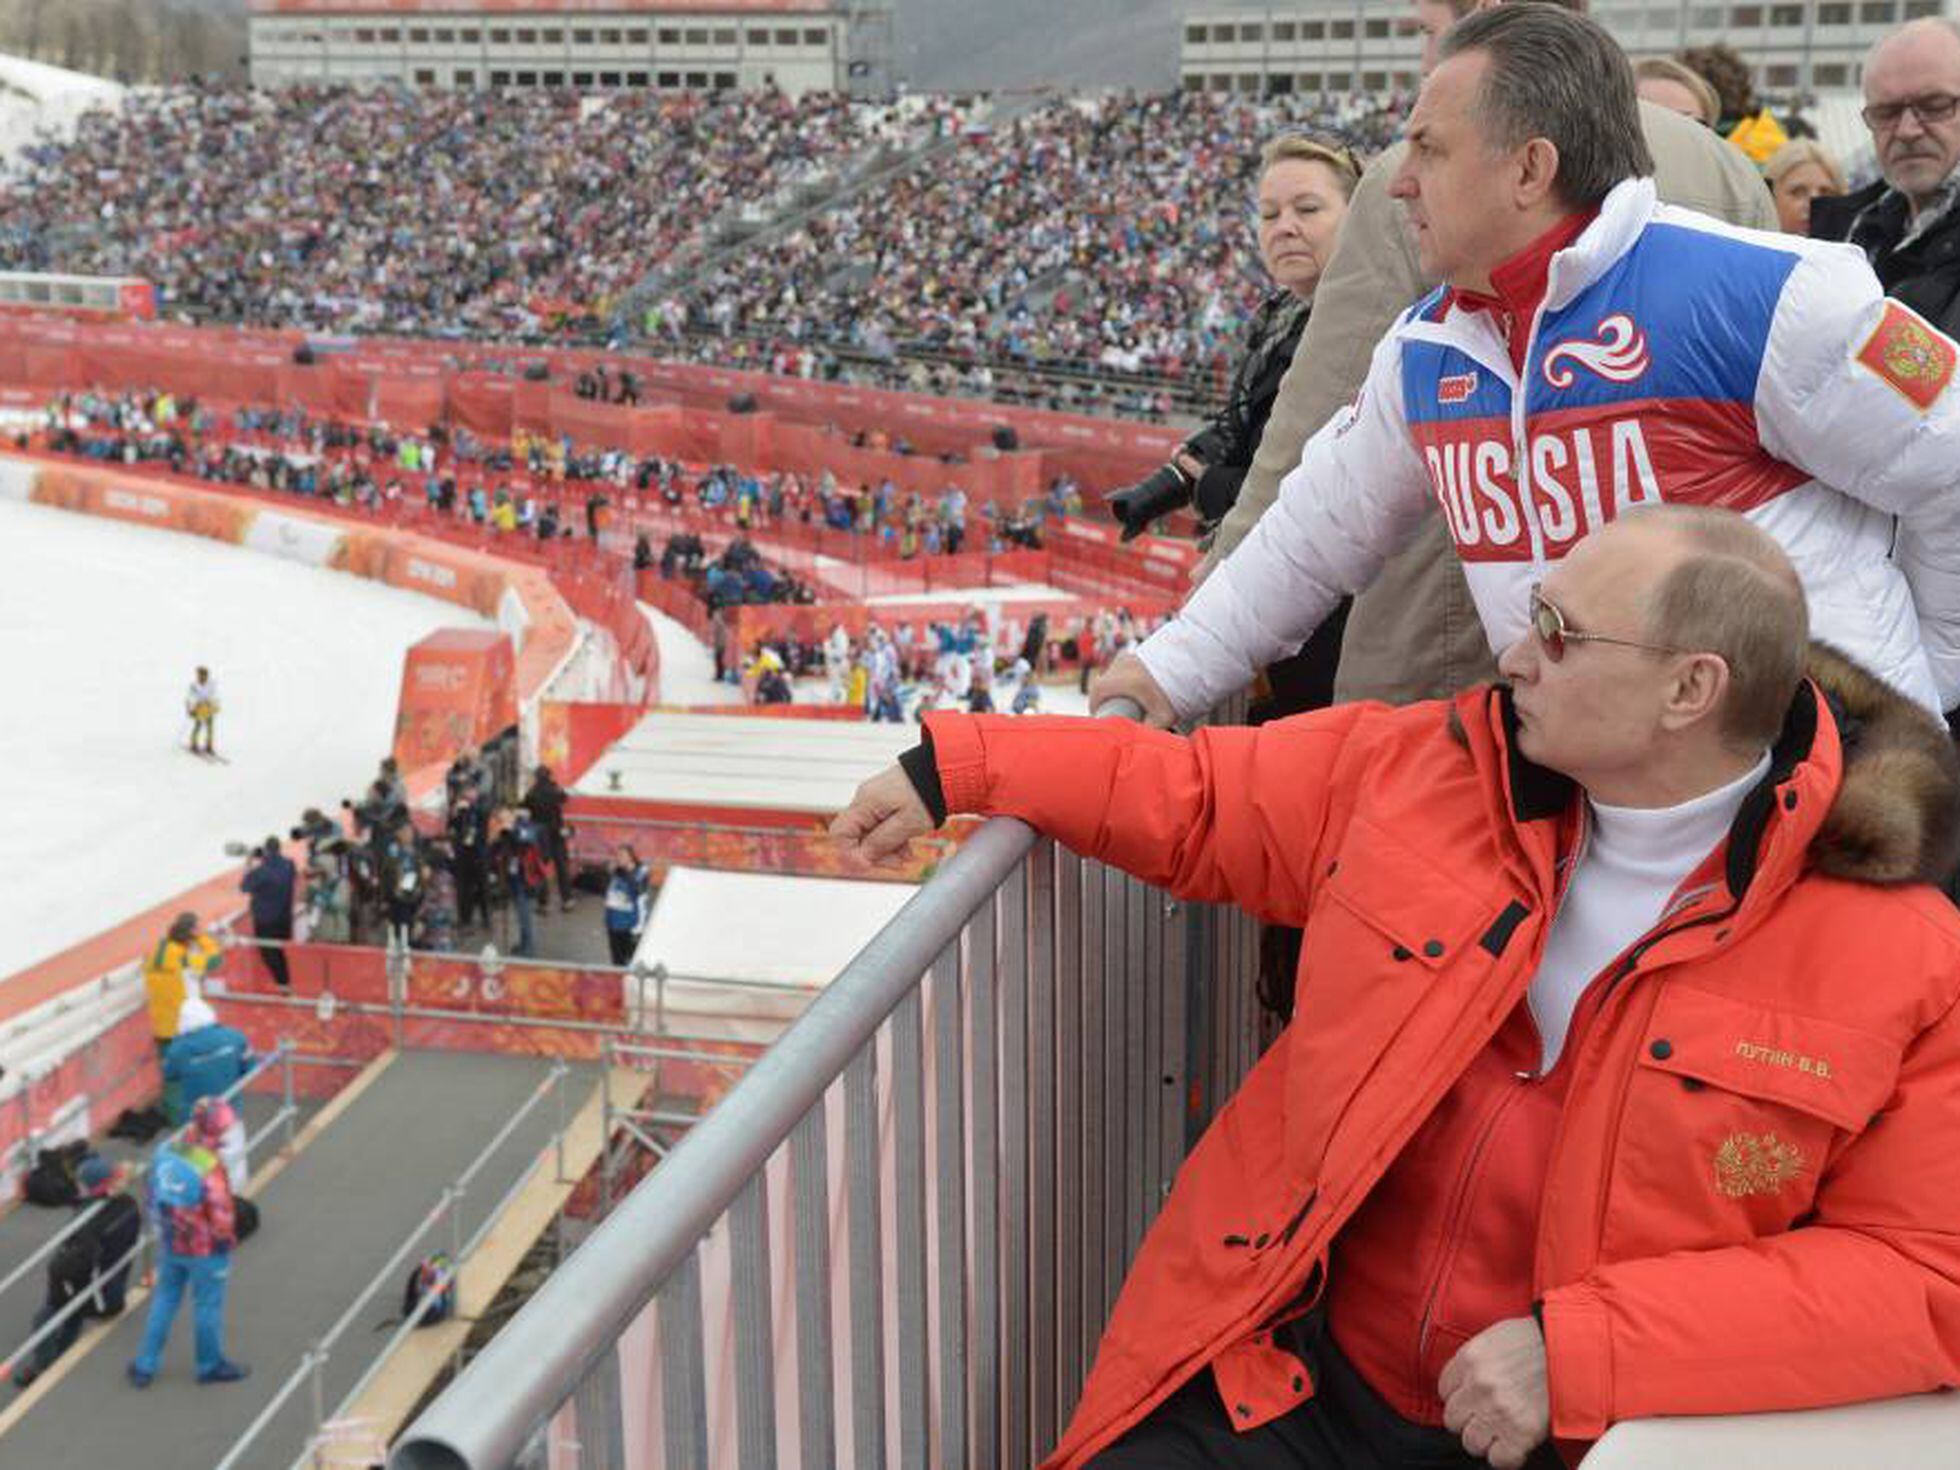 Atletas russos vão à Olimpíada no Rio apesar de acusações de doping